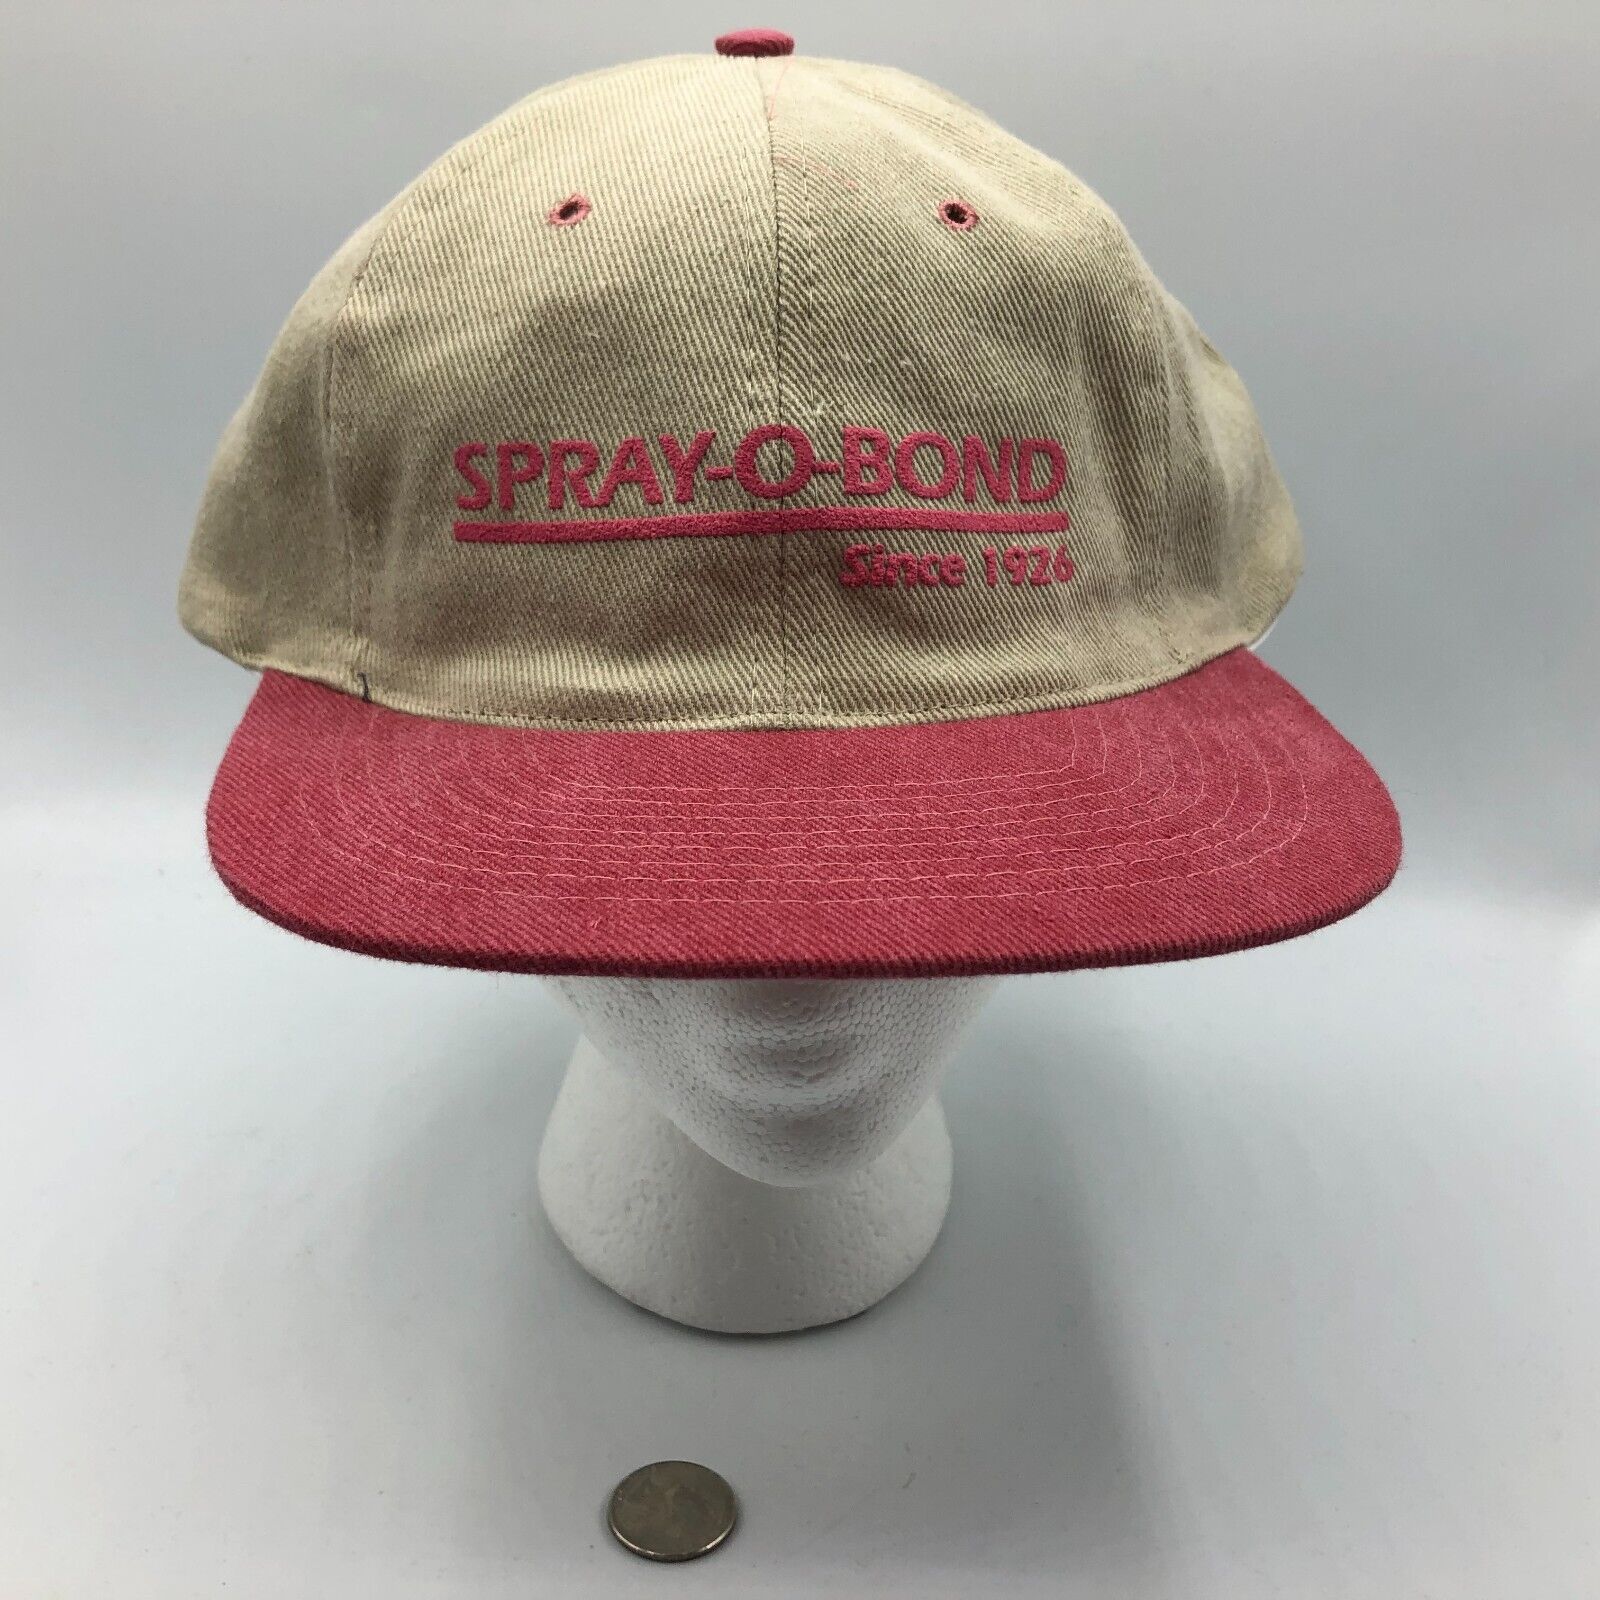 SPRAY-O-BOND Snapback Baseball Cap Baseball Hat Advertising Vintage Nissin